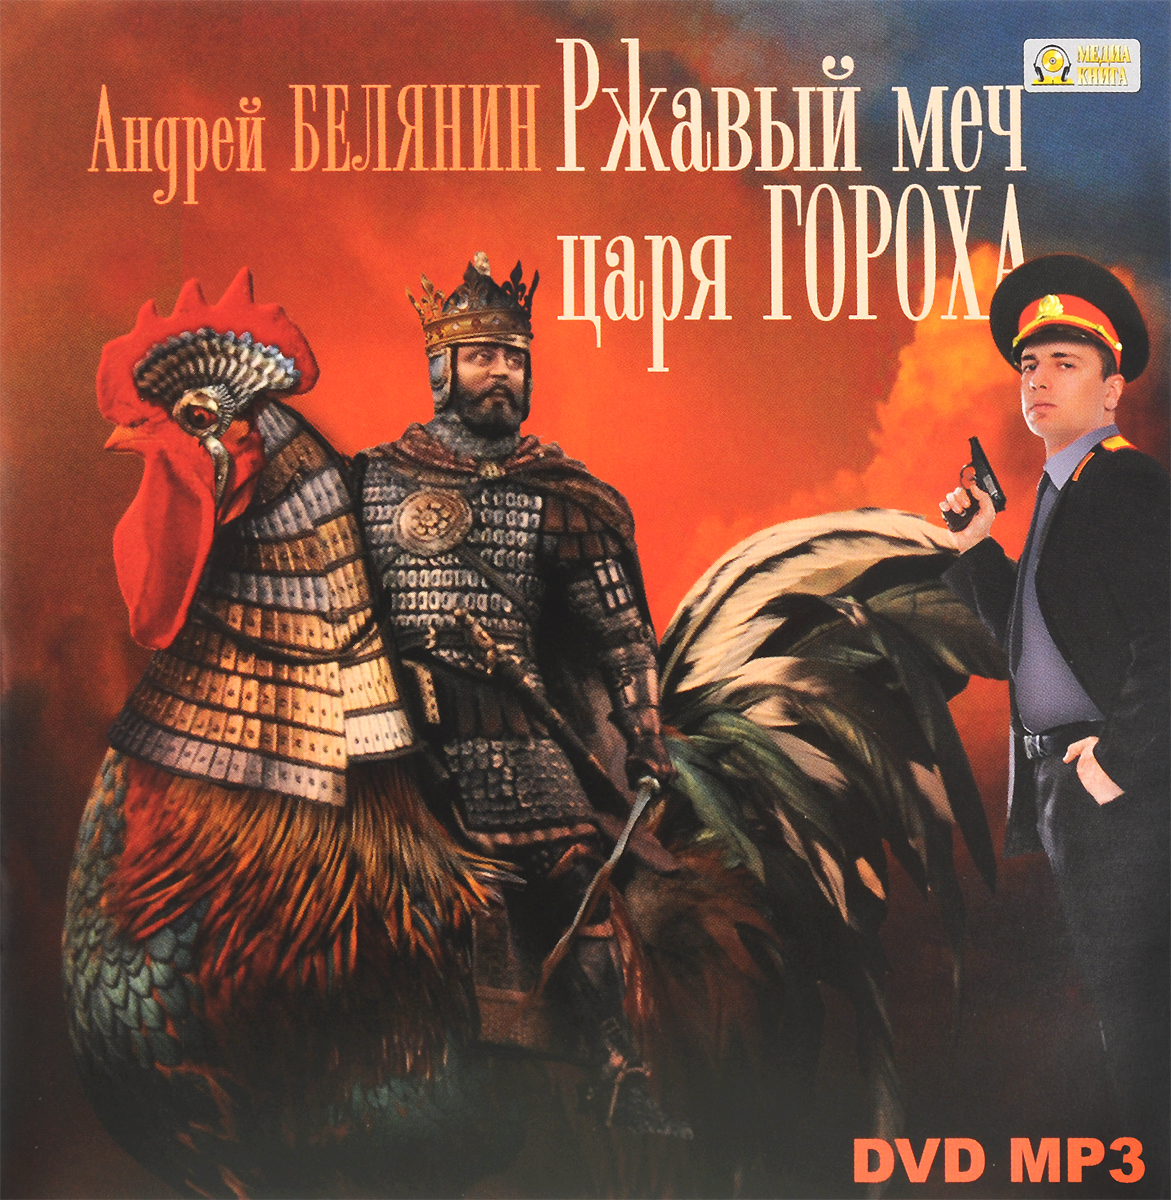 Ржавый меч царя Гороха (аудиокнига MP3 на DVD)